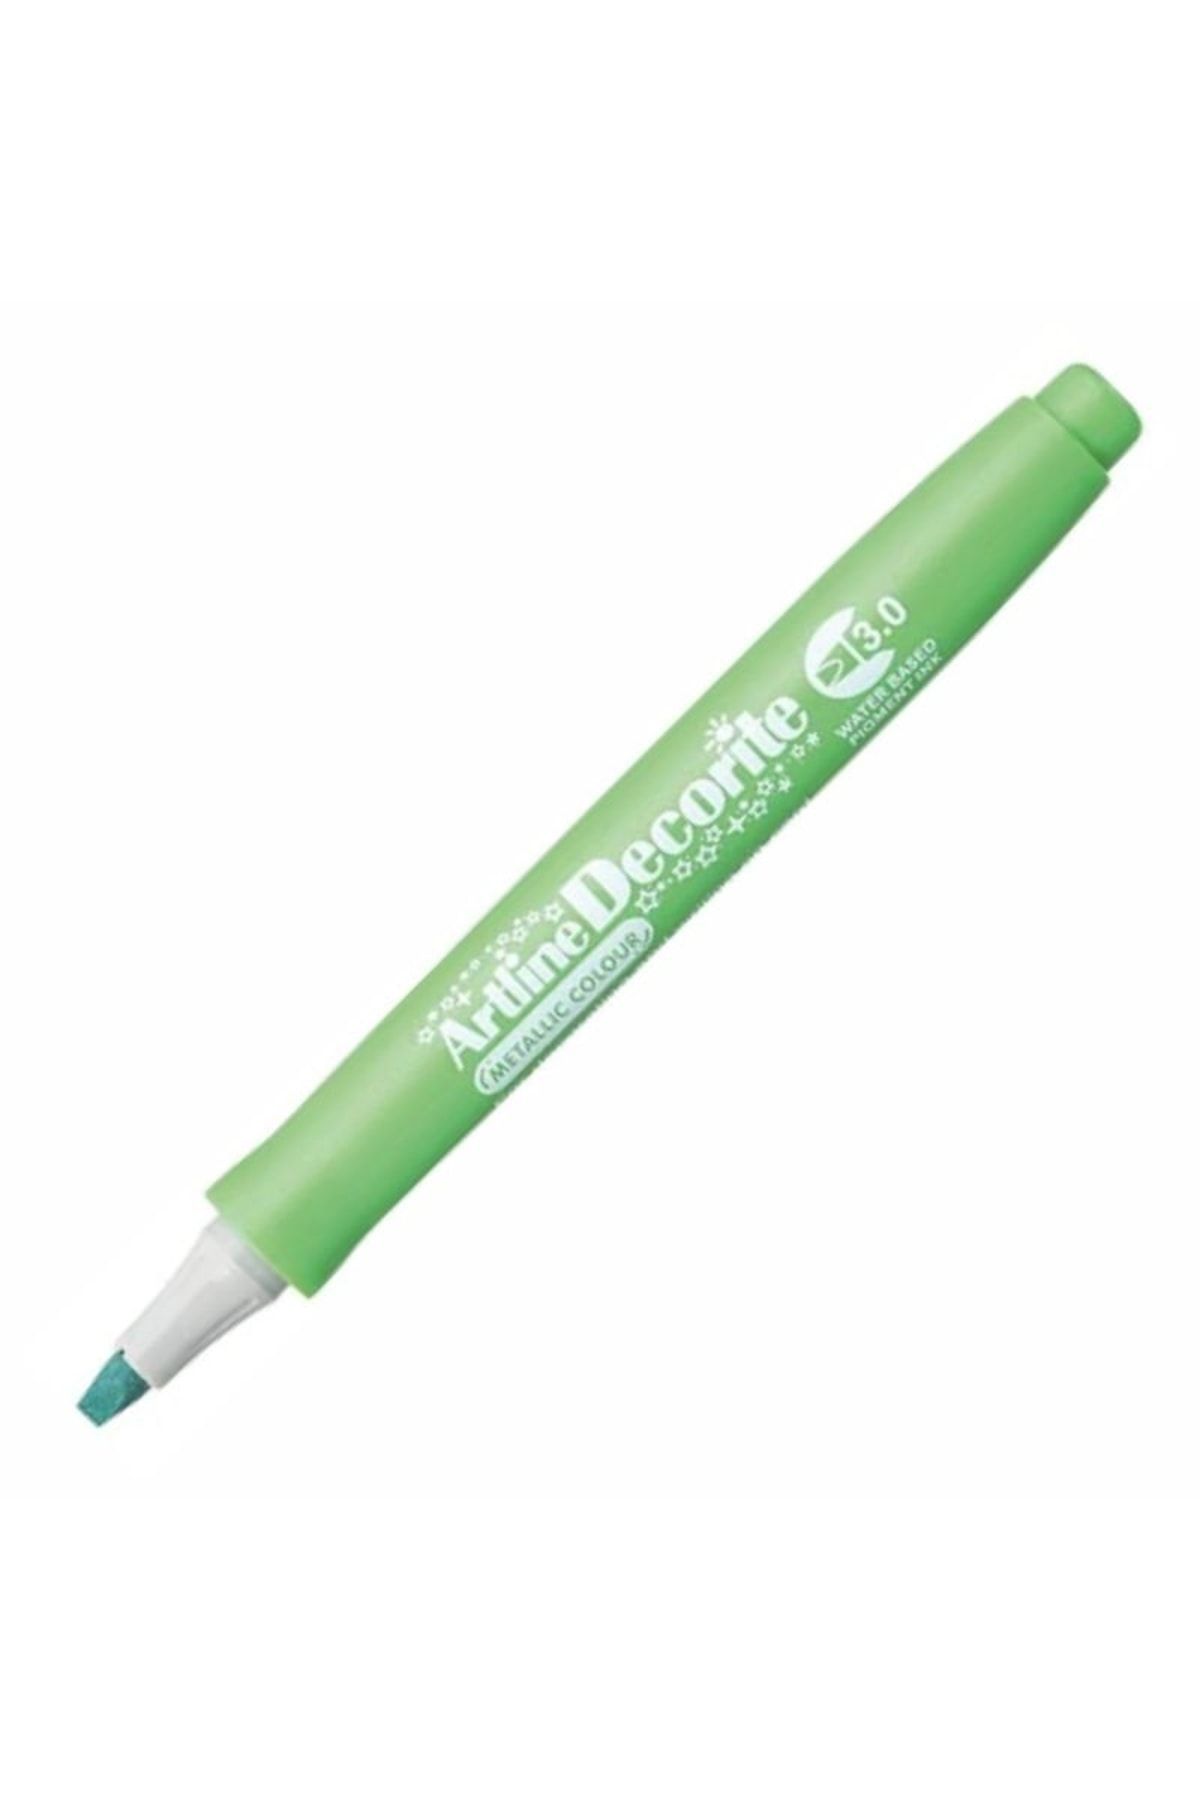 Genel Markalar Artline Decorite Marker Kalem Düz Kesik Uç 3.0 Metallic Green